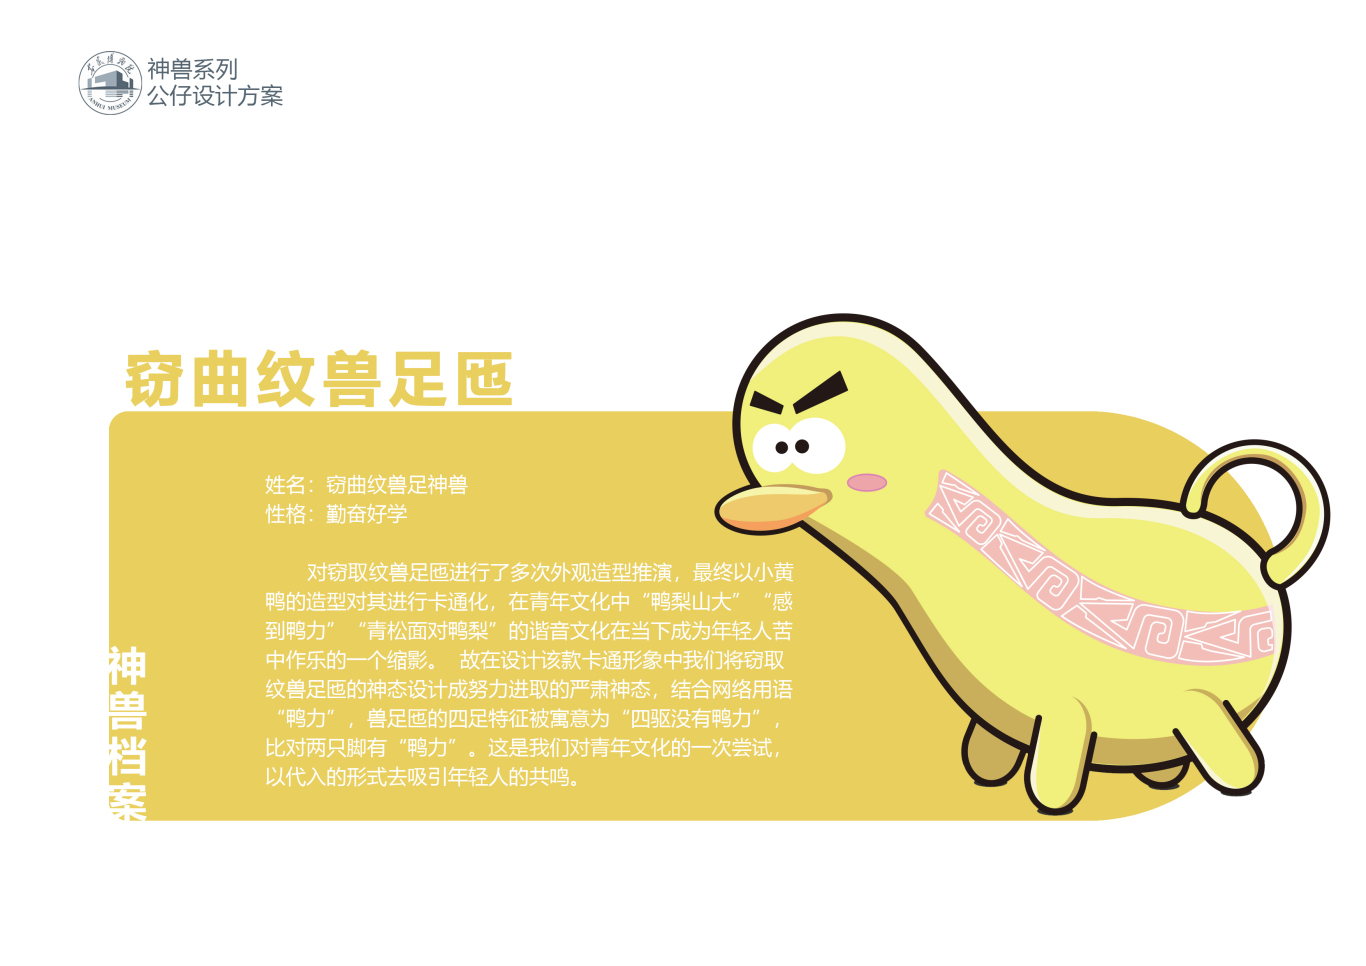 安徽博物院神兽系列卡通形象设计方案图3